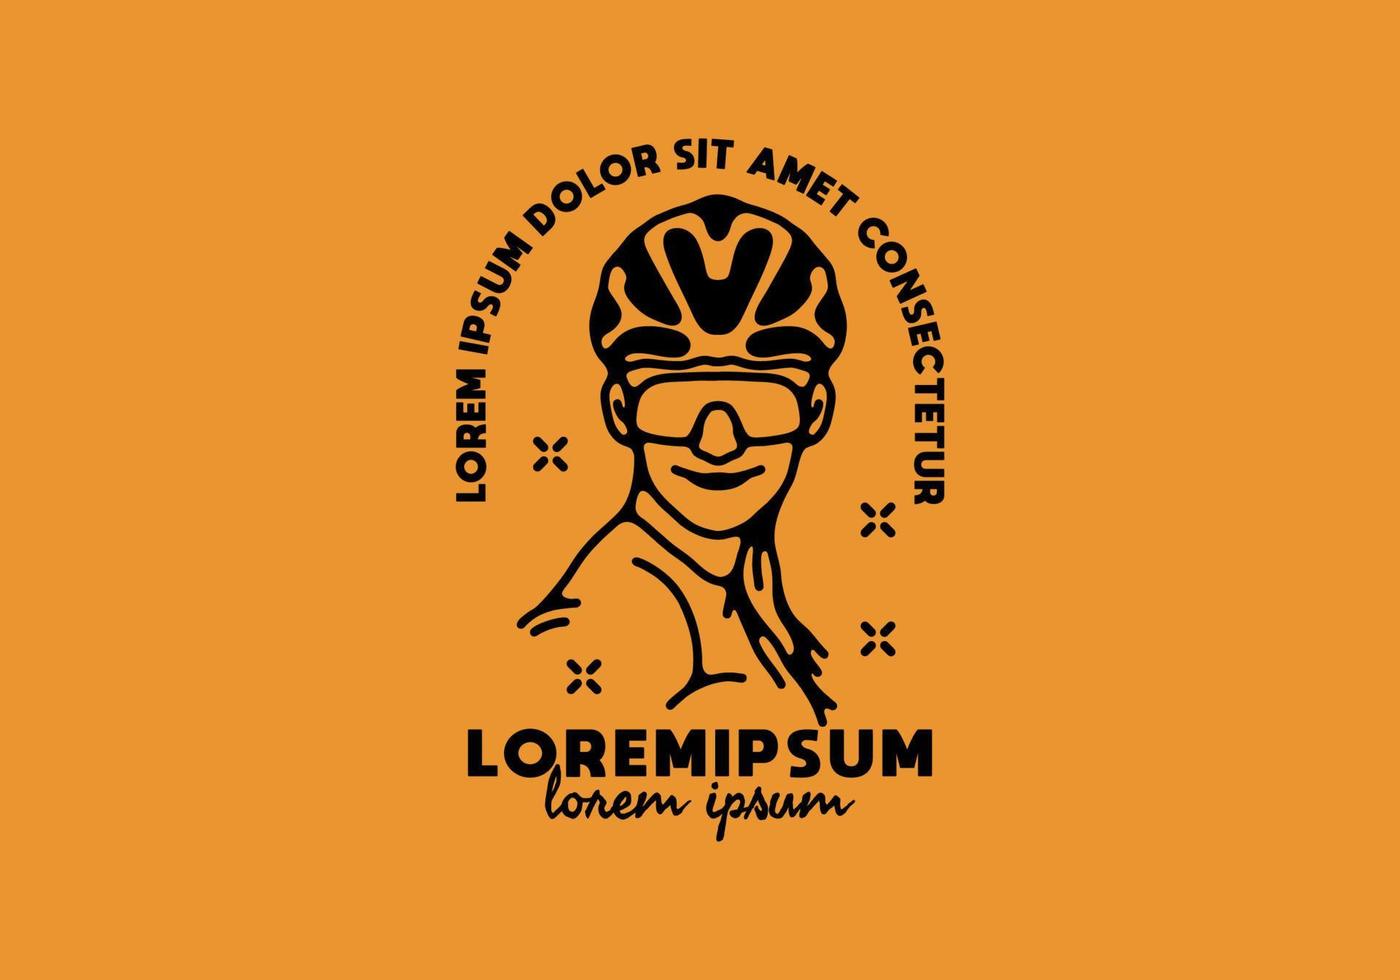 vrouwen met fietshelm lijntekeningen met lorem ipsum tekst vector